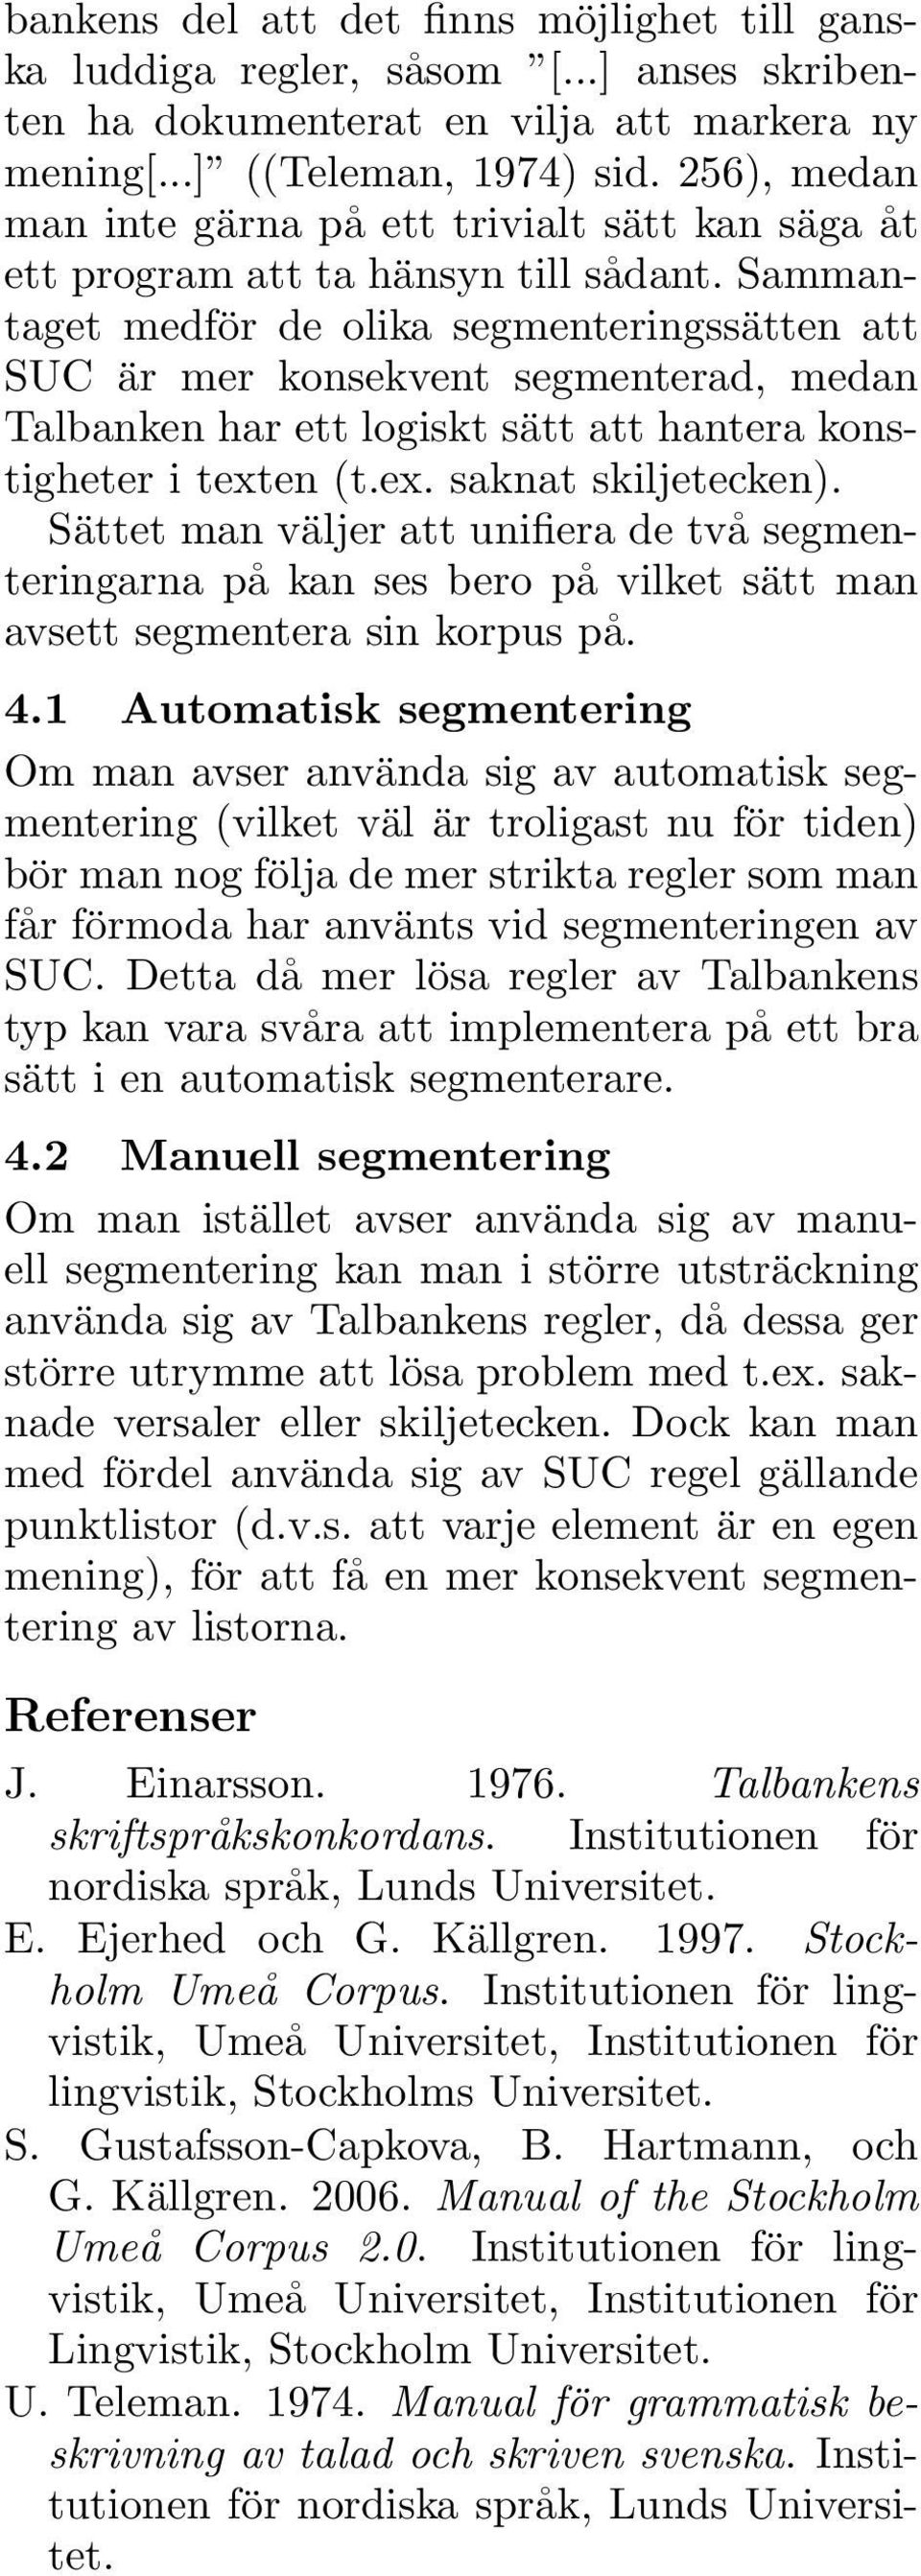 Sammantaget medför de olika segmenteringssätten att SUC är mer konsekvent segmenterad, medan Talbanken har ett logiskt sätt att hantera konstigheter i texten (t.ex. saknat skiljetecken).